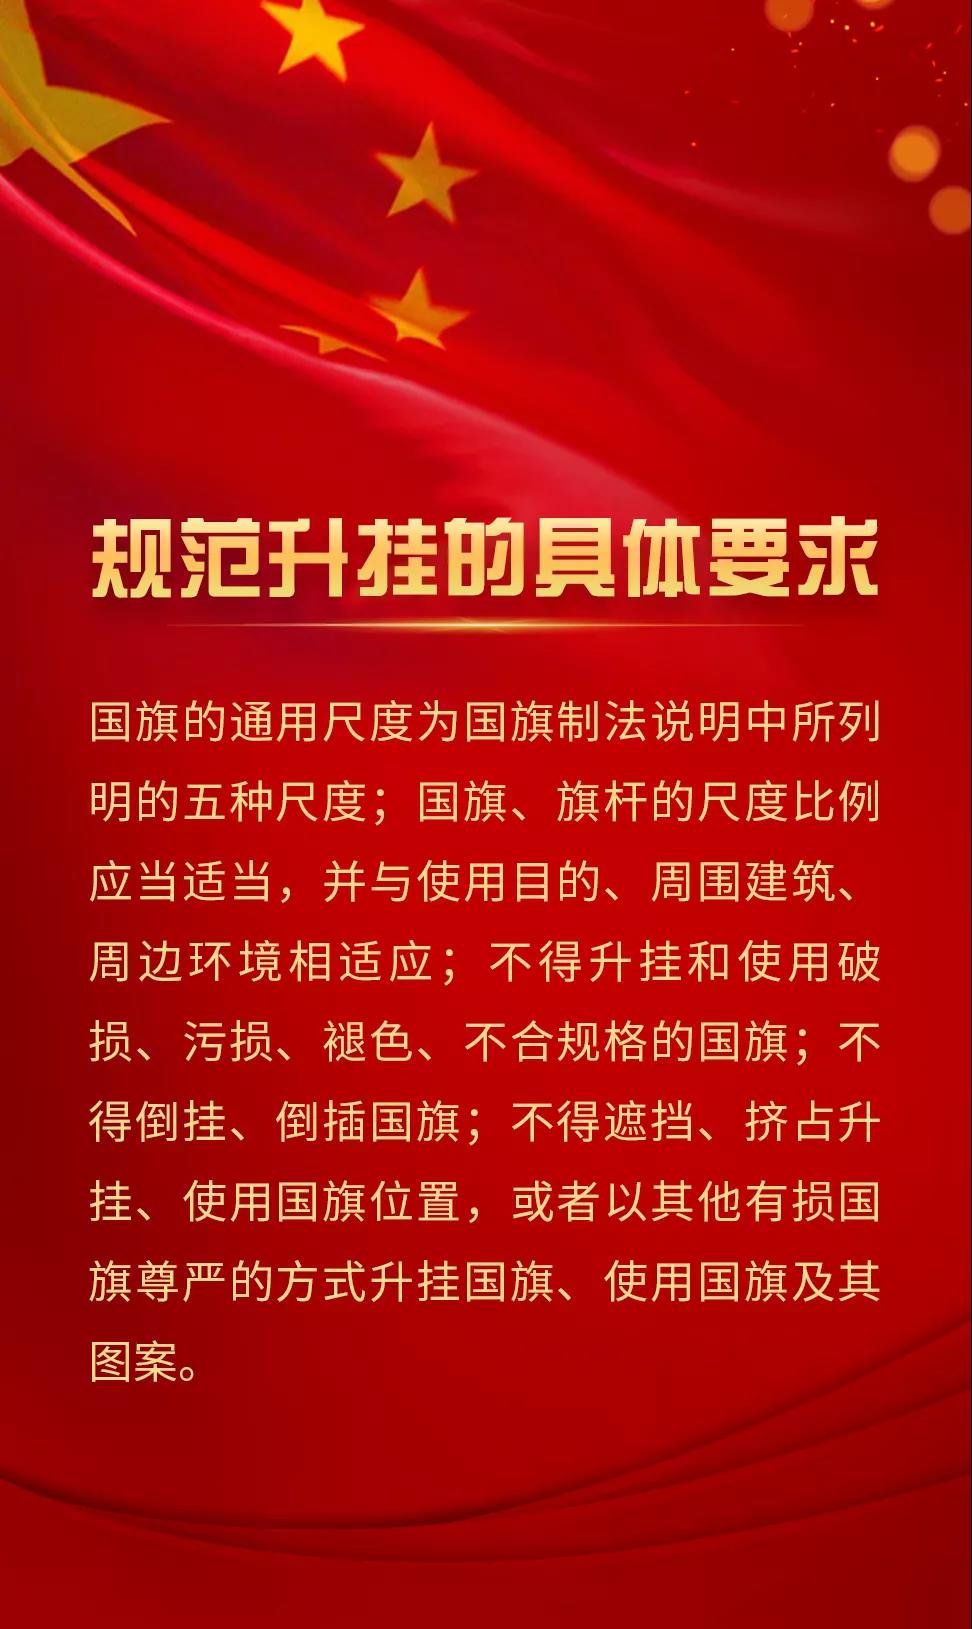 重庆市铜梁区城市管理局关于国庆期间升挂国旗的通知政策解读